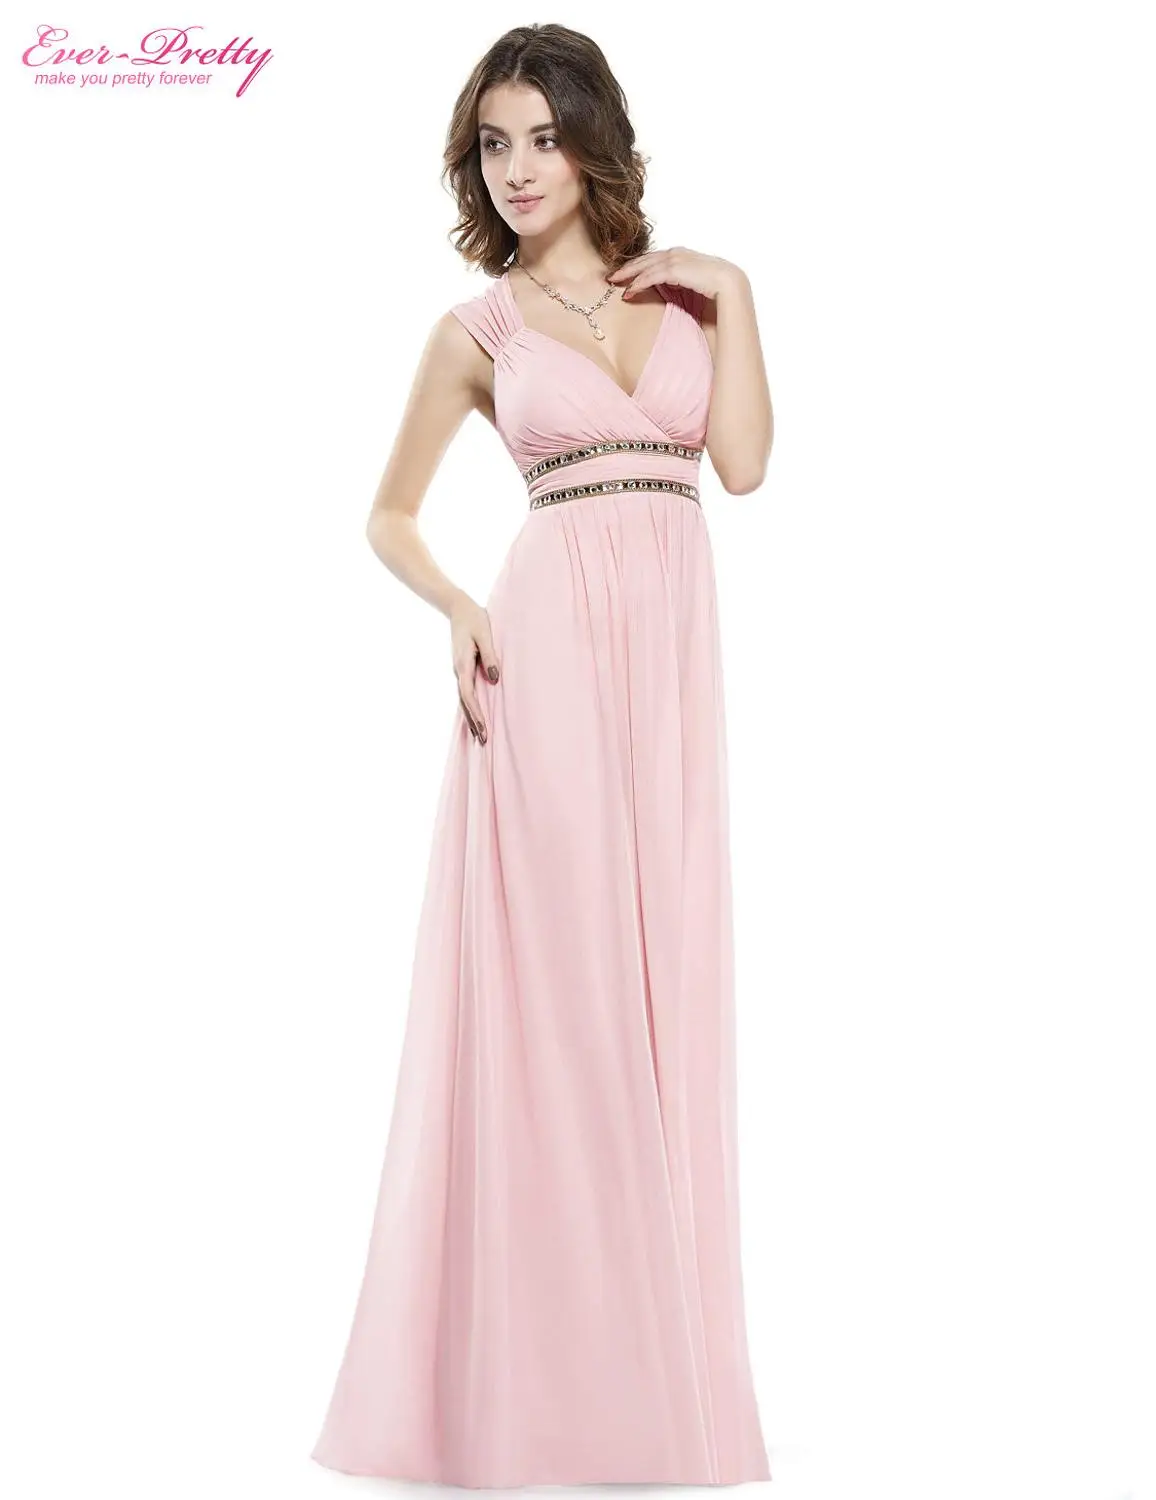 Ever-Pretty вечерние платья EP08697 женские красивые элегантные А-образные сексуальные белые с v-образным вырезом Длинные платья для выпускного вечера платья для вечеринок - Цвет: Pink